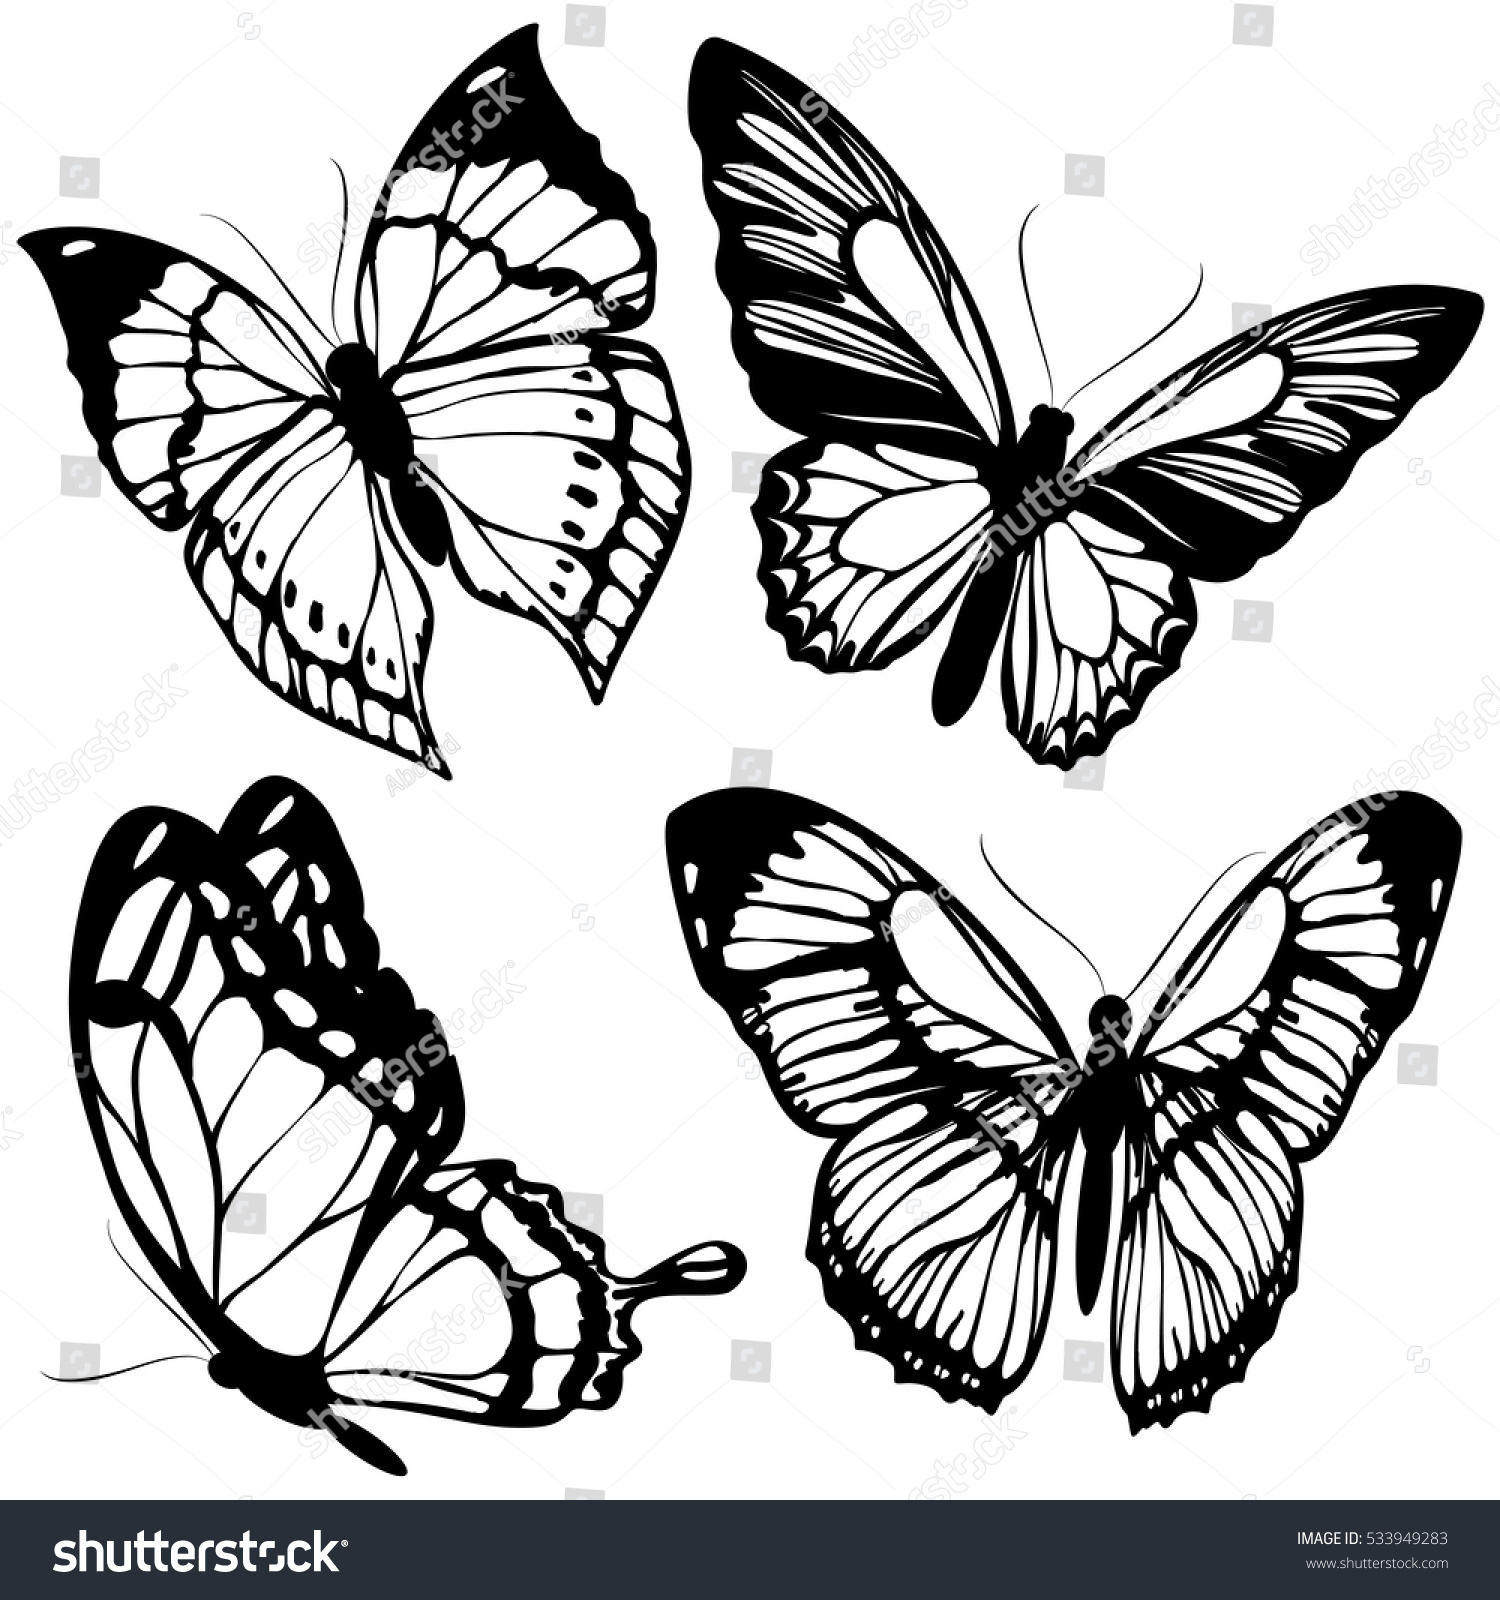 Mariposas Negras Aisladas En Blanco Vector De Stock Libre De Regalías 533949283 Shutterstock 2929